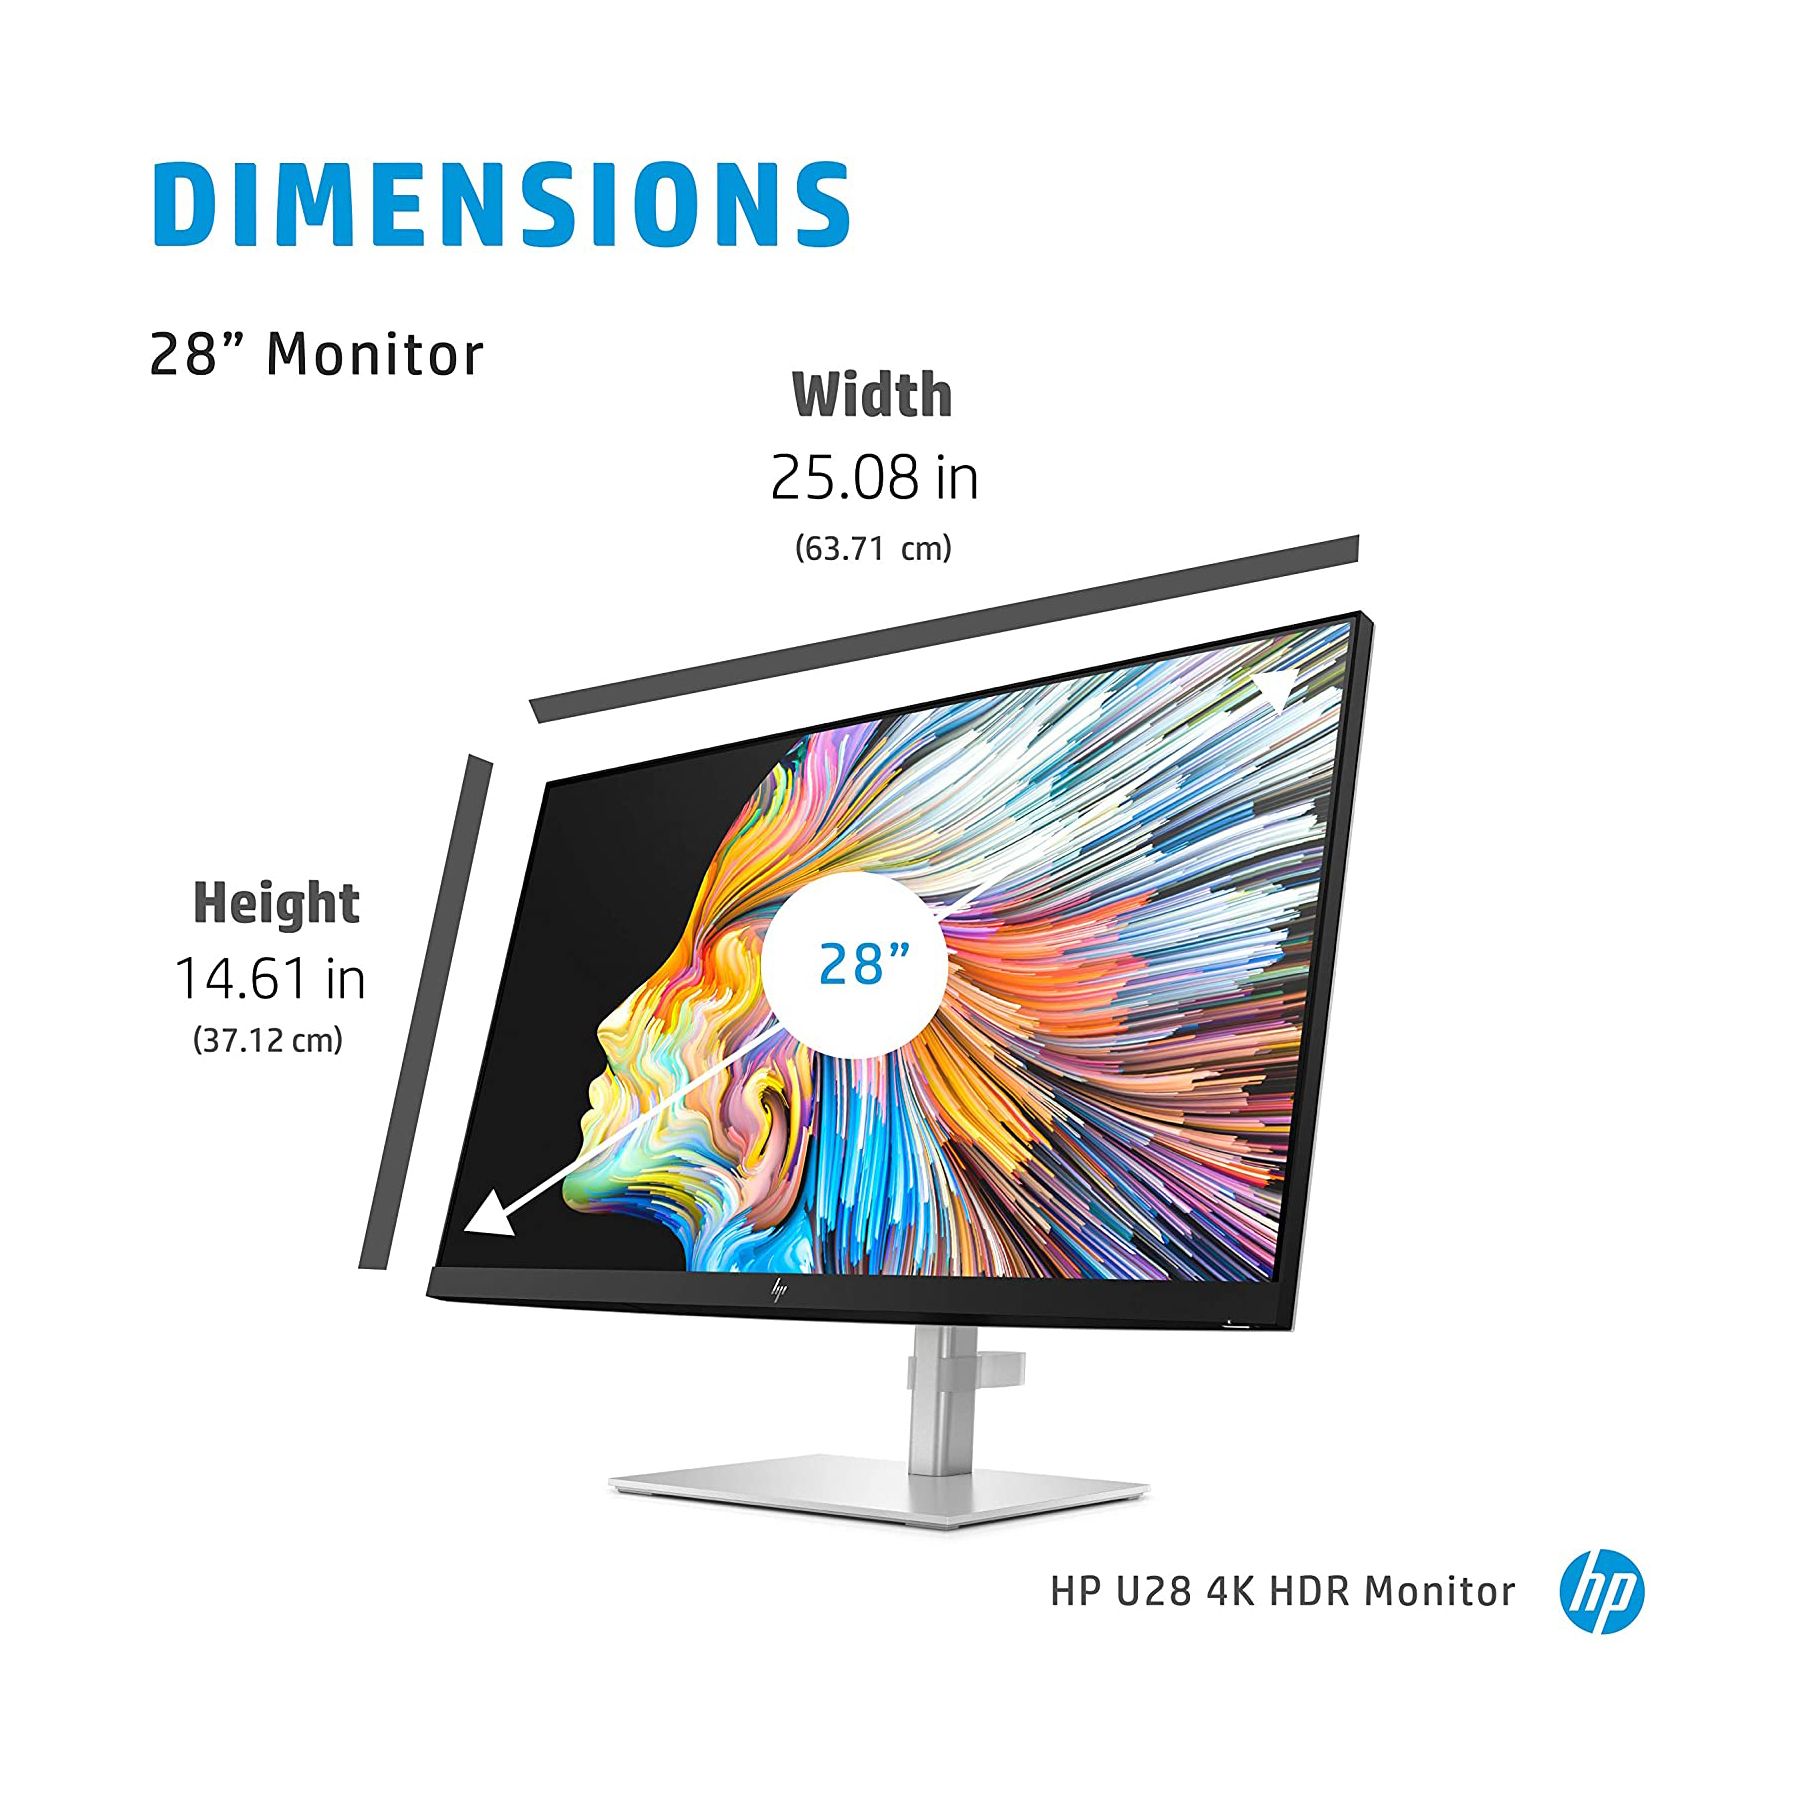 HP U28 4K HDR Monitor 02